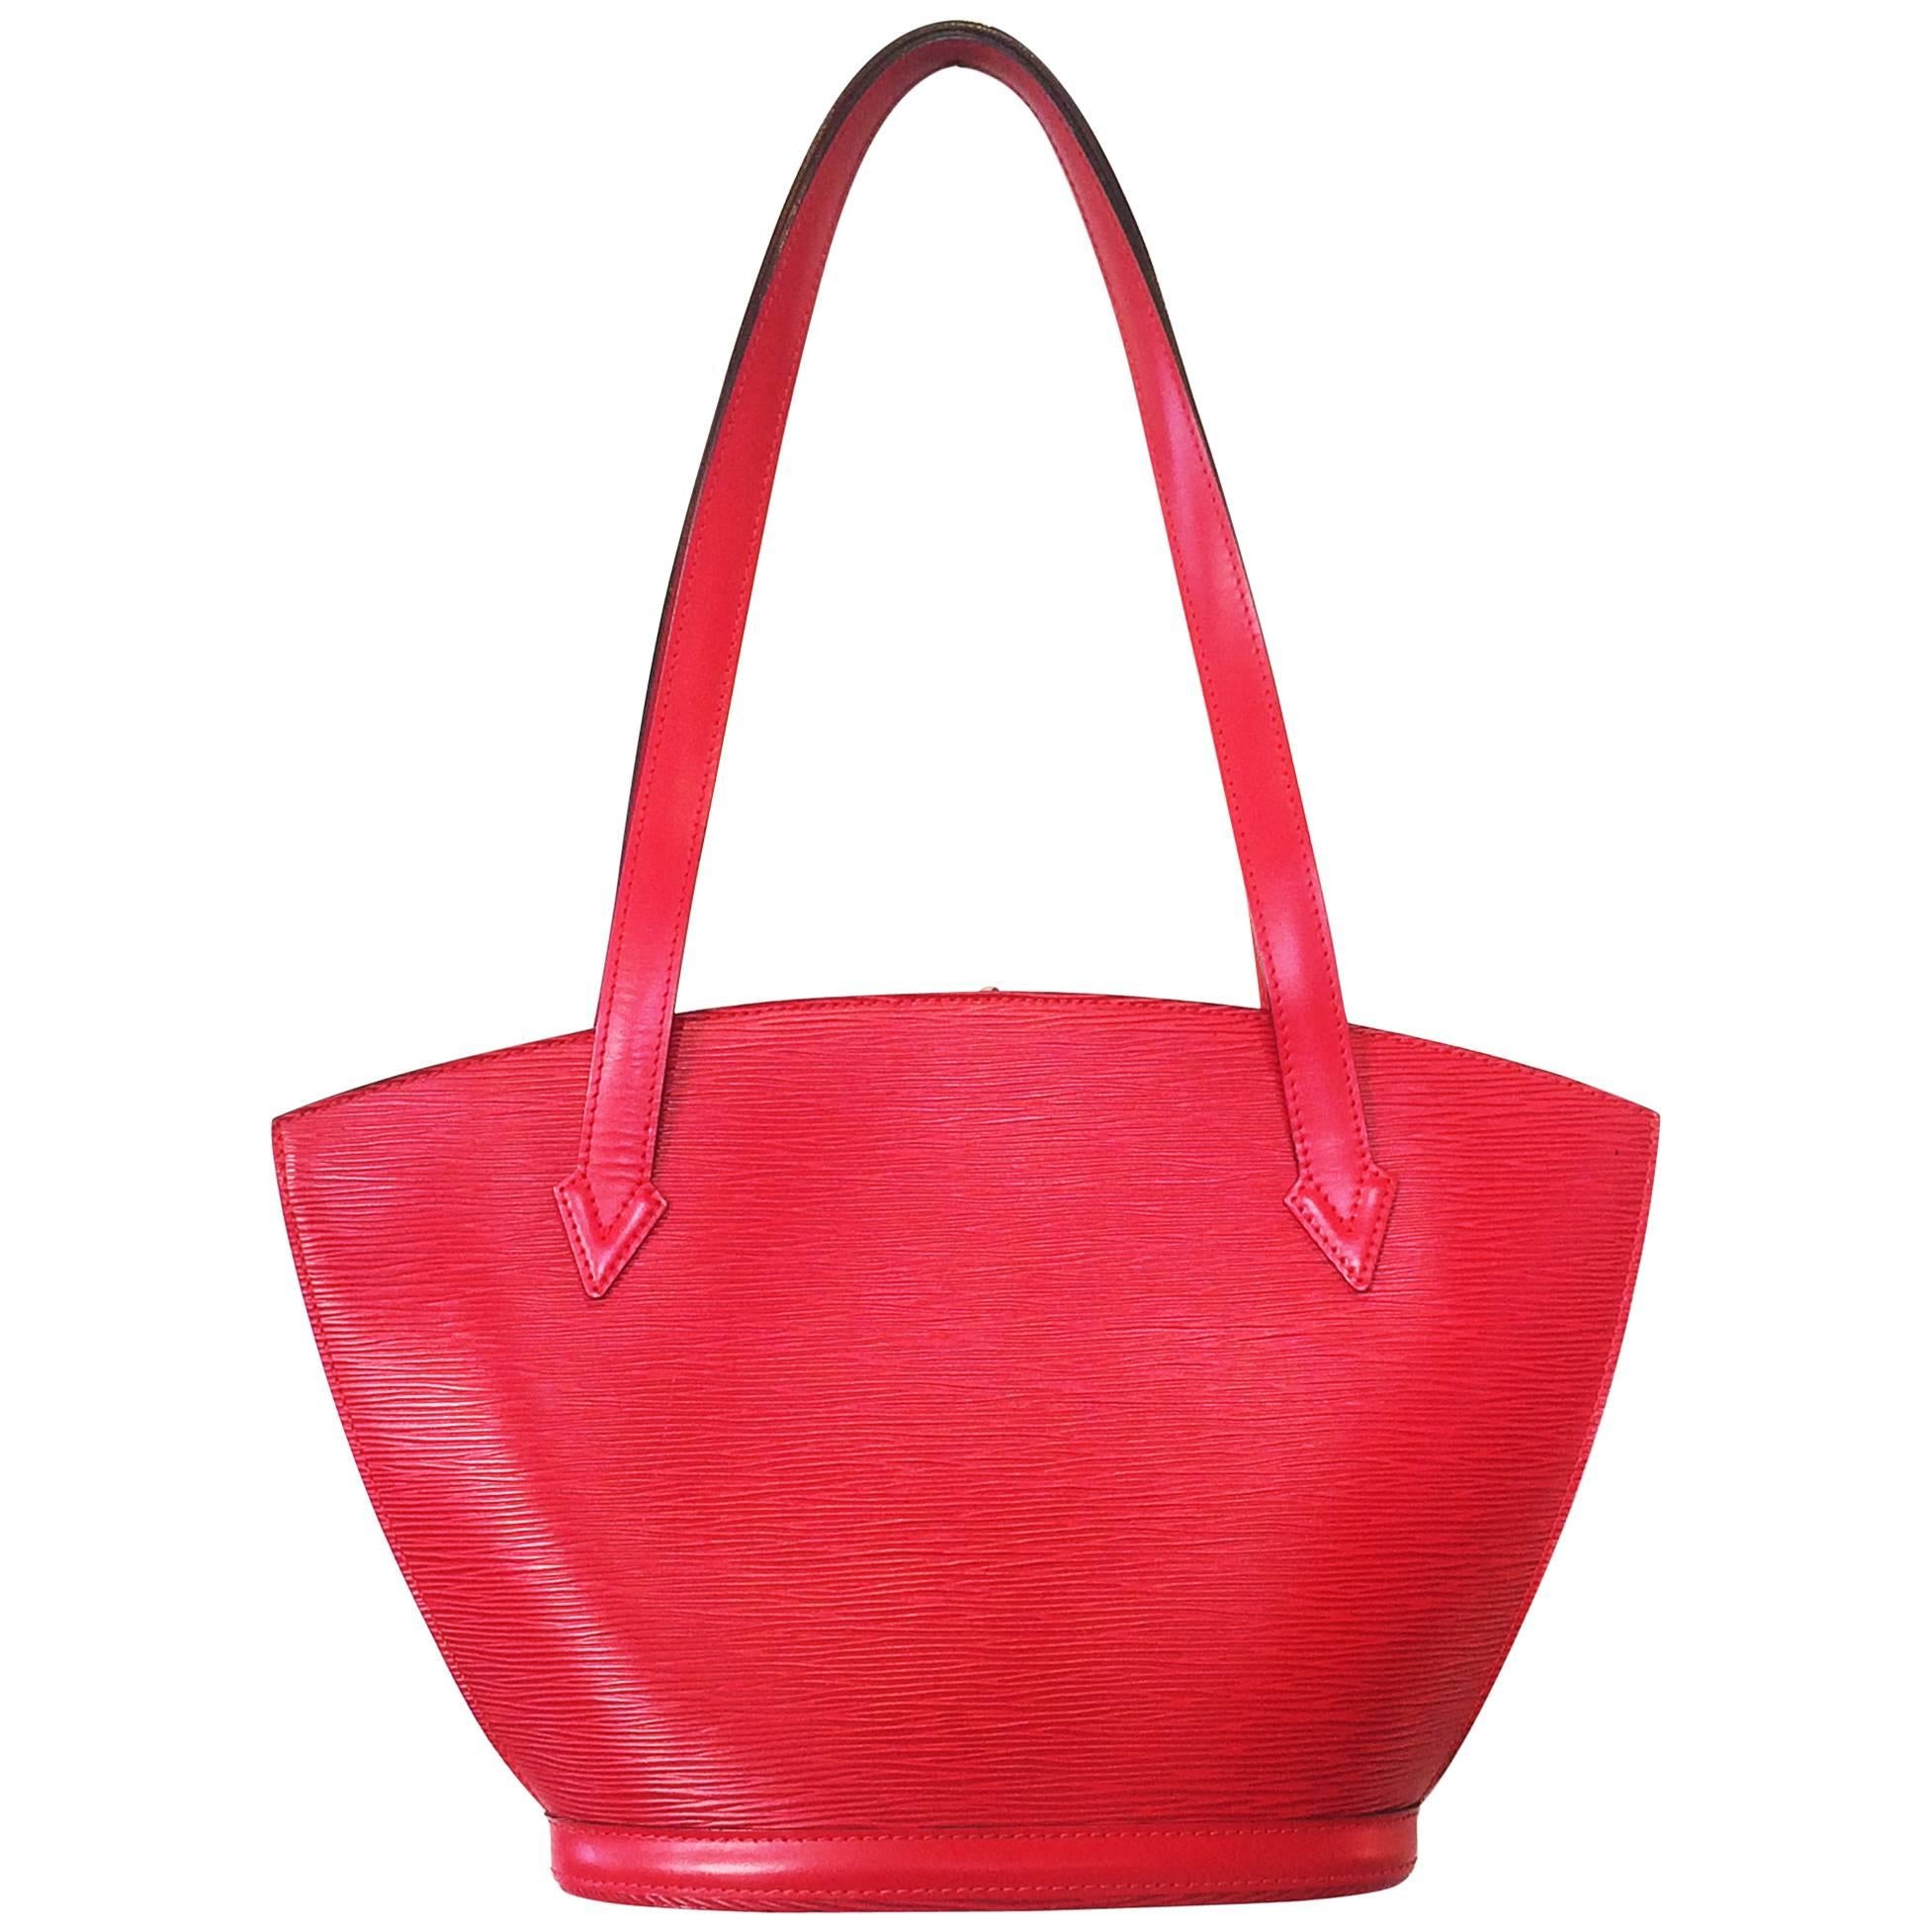 Red EPI Leather St. Jacques Louis Vuitton handbag bag purse